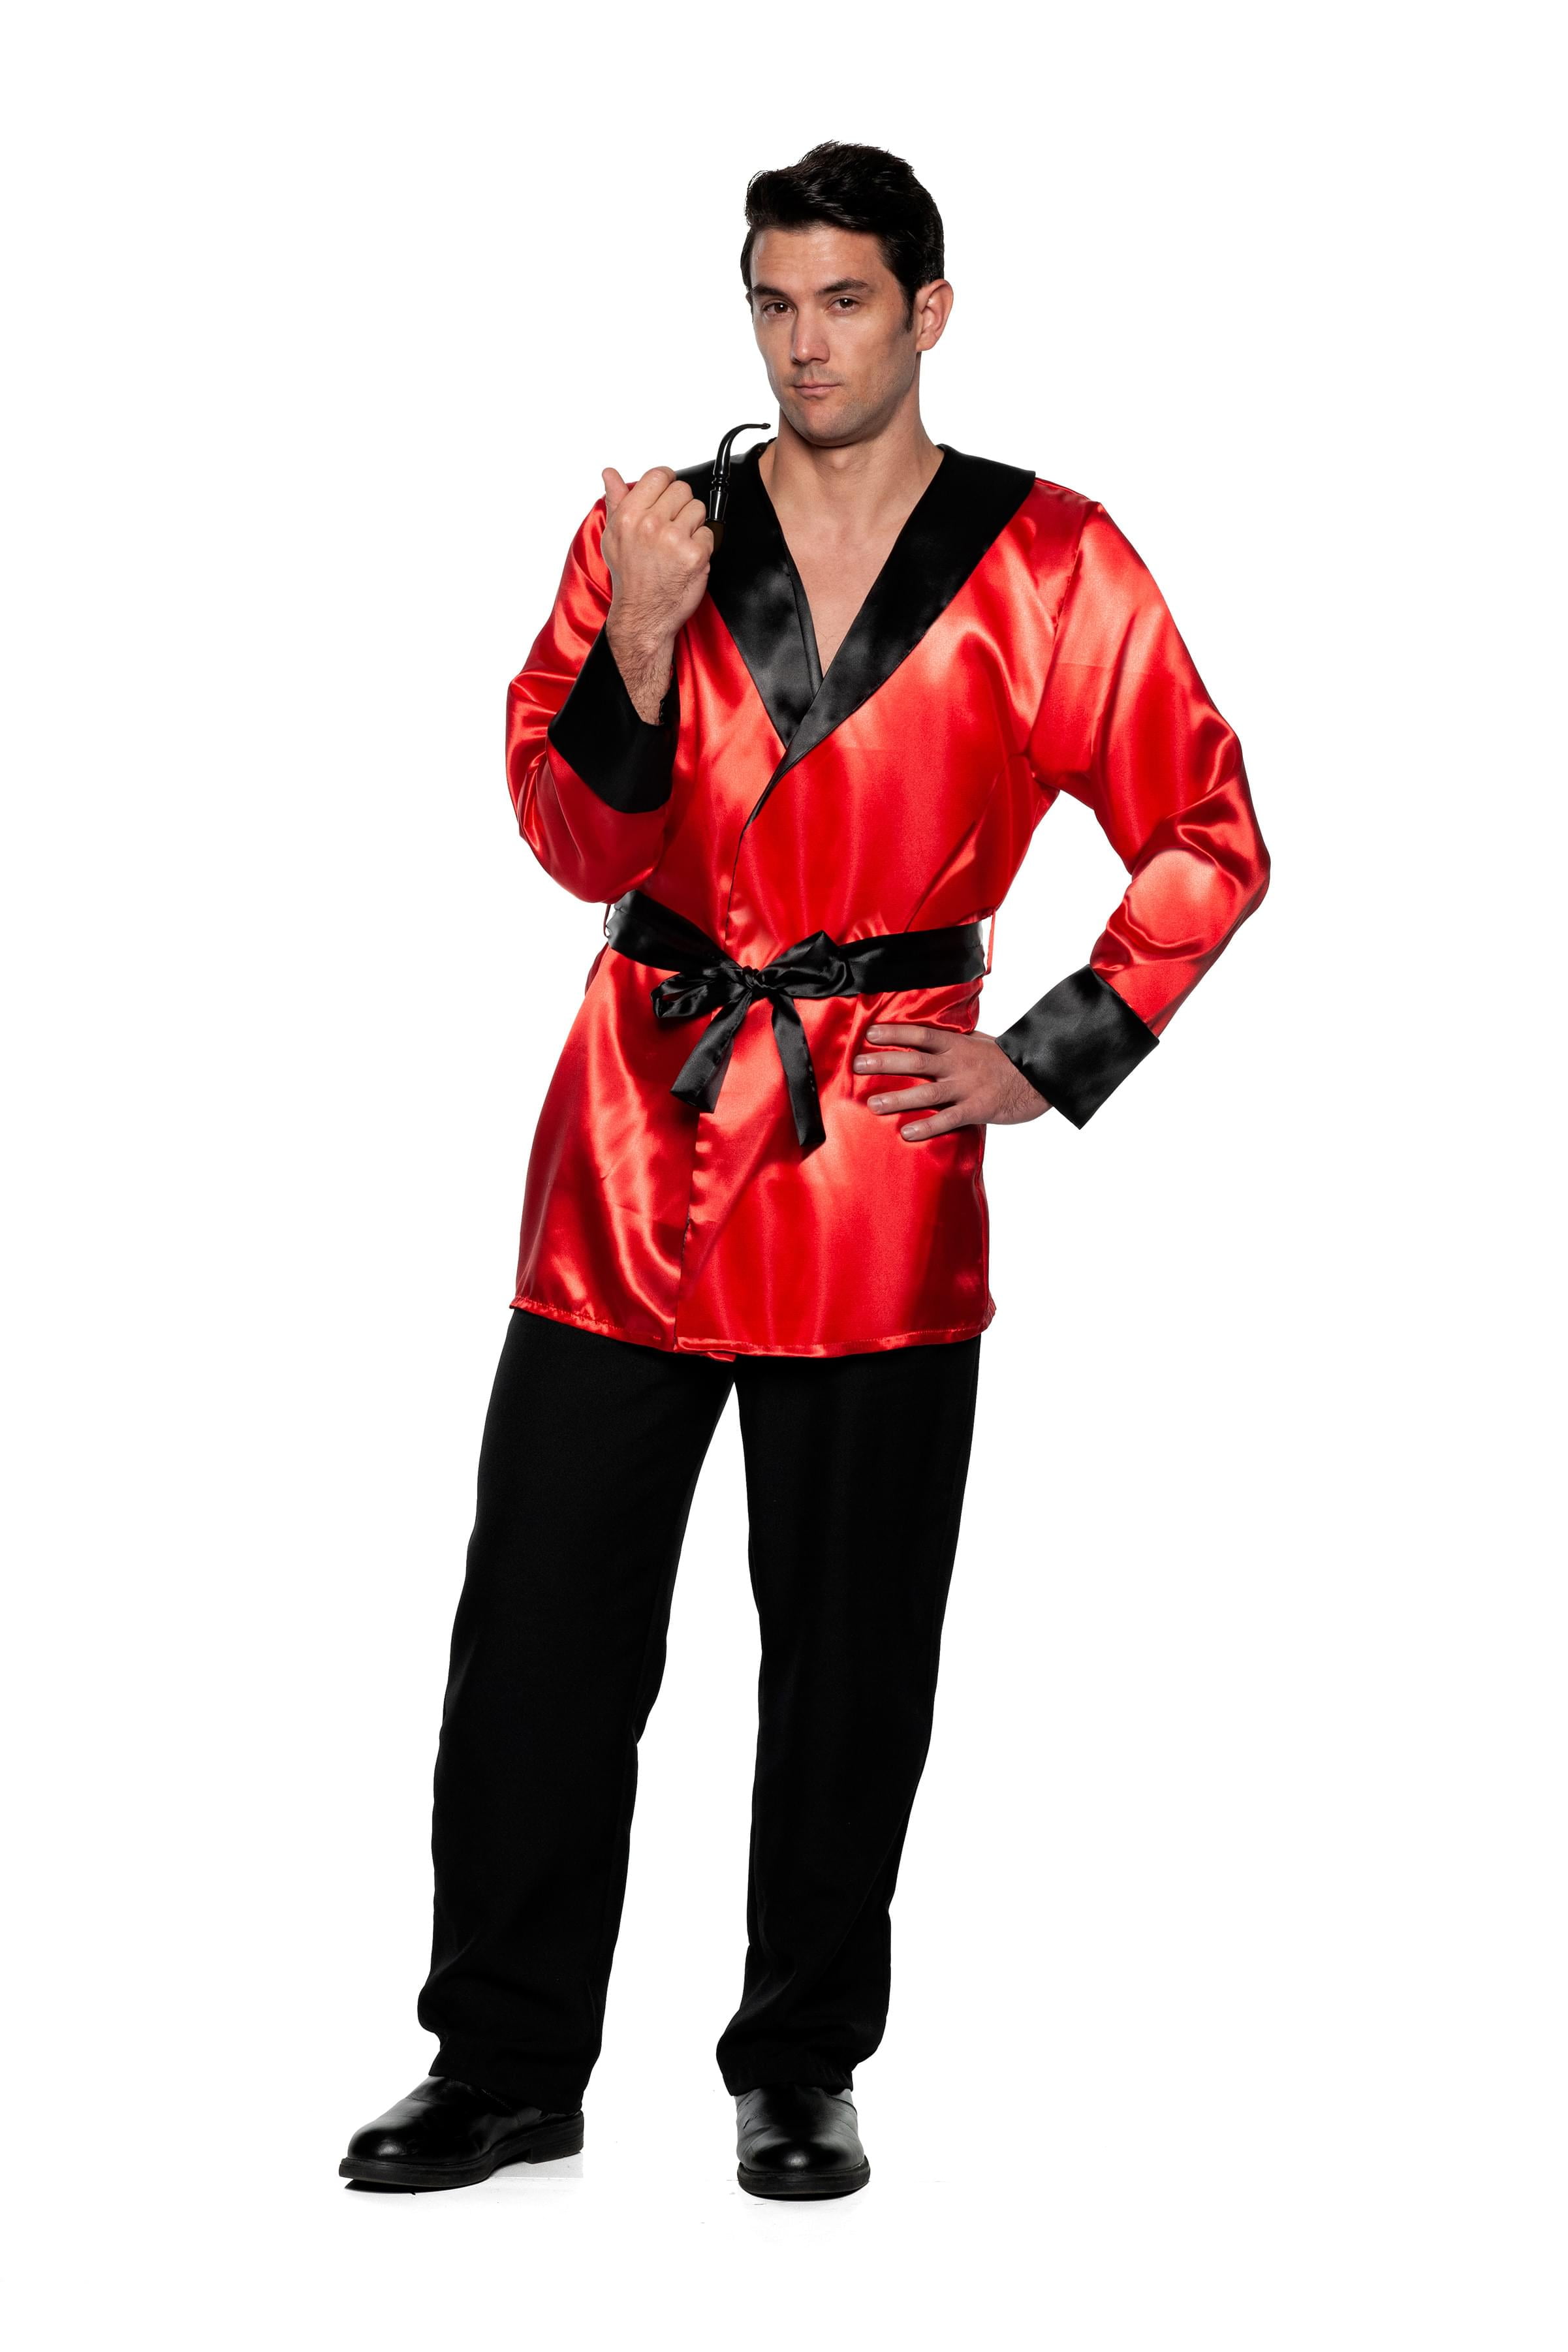 Melodieus Zo snel als een flits Onheil Red Satin Smoking Jacket Adult Costume | Standard - Walmart.com